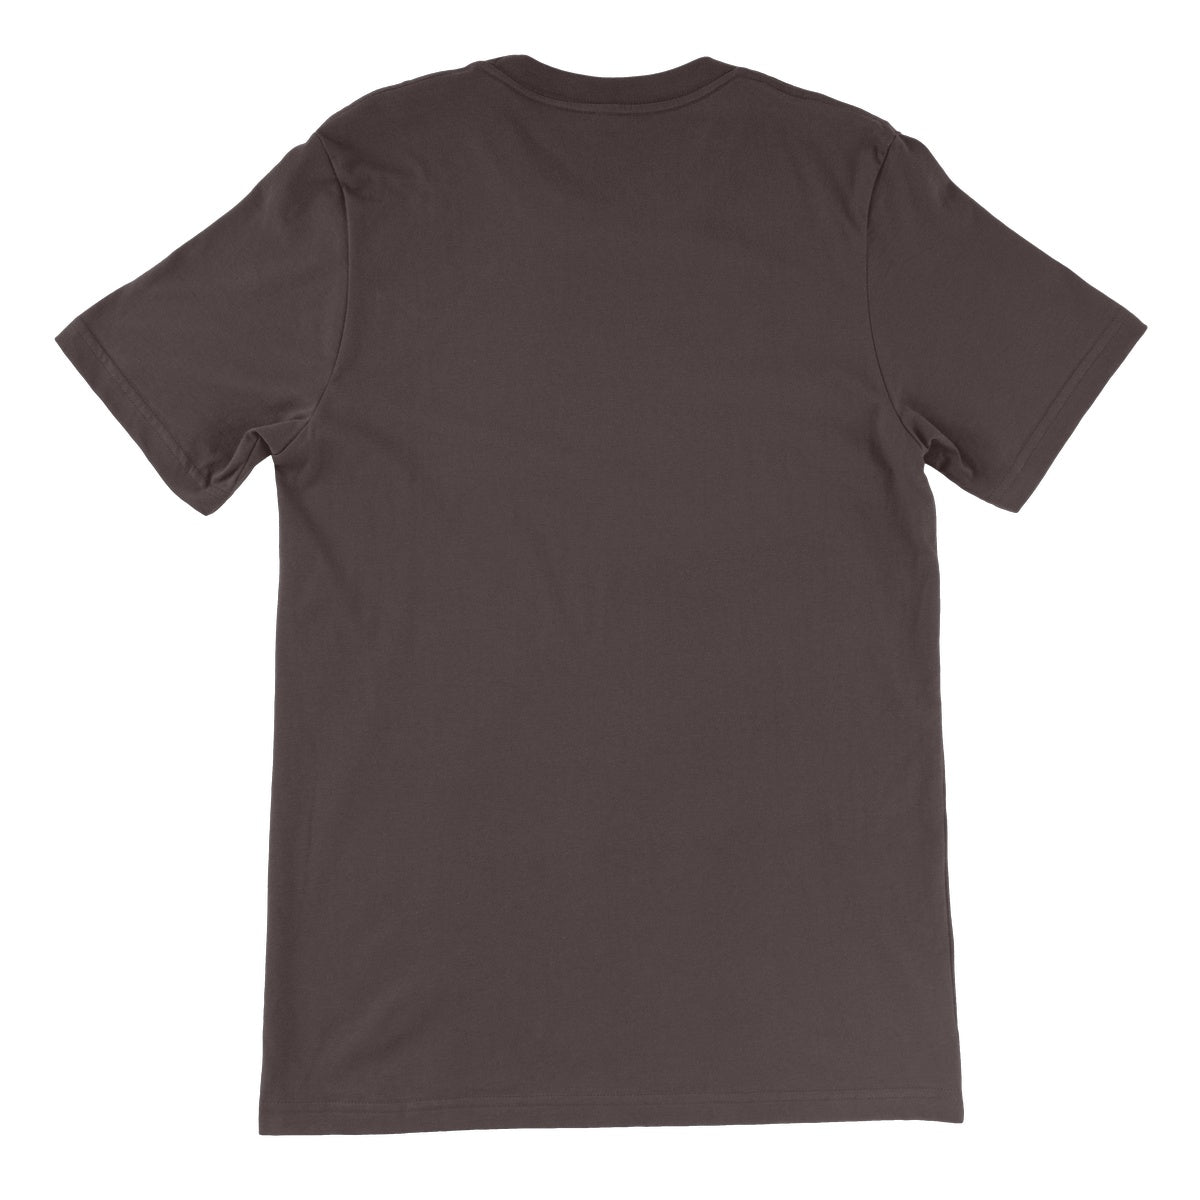 Loxodromes, Pond Unisex Short Sleeve T-Shirt